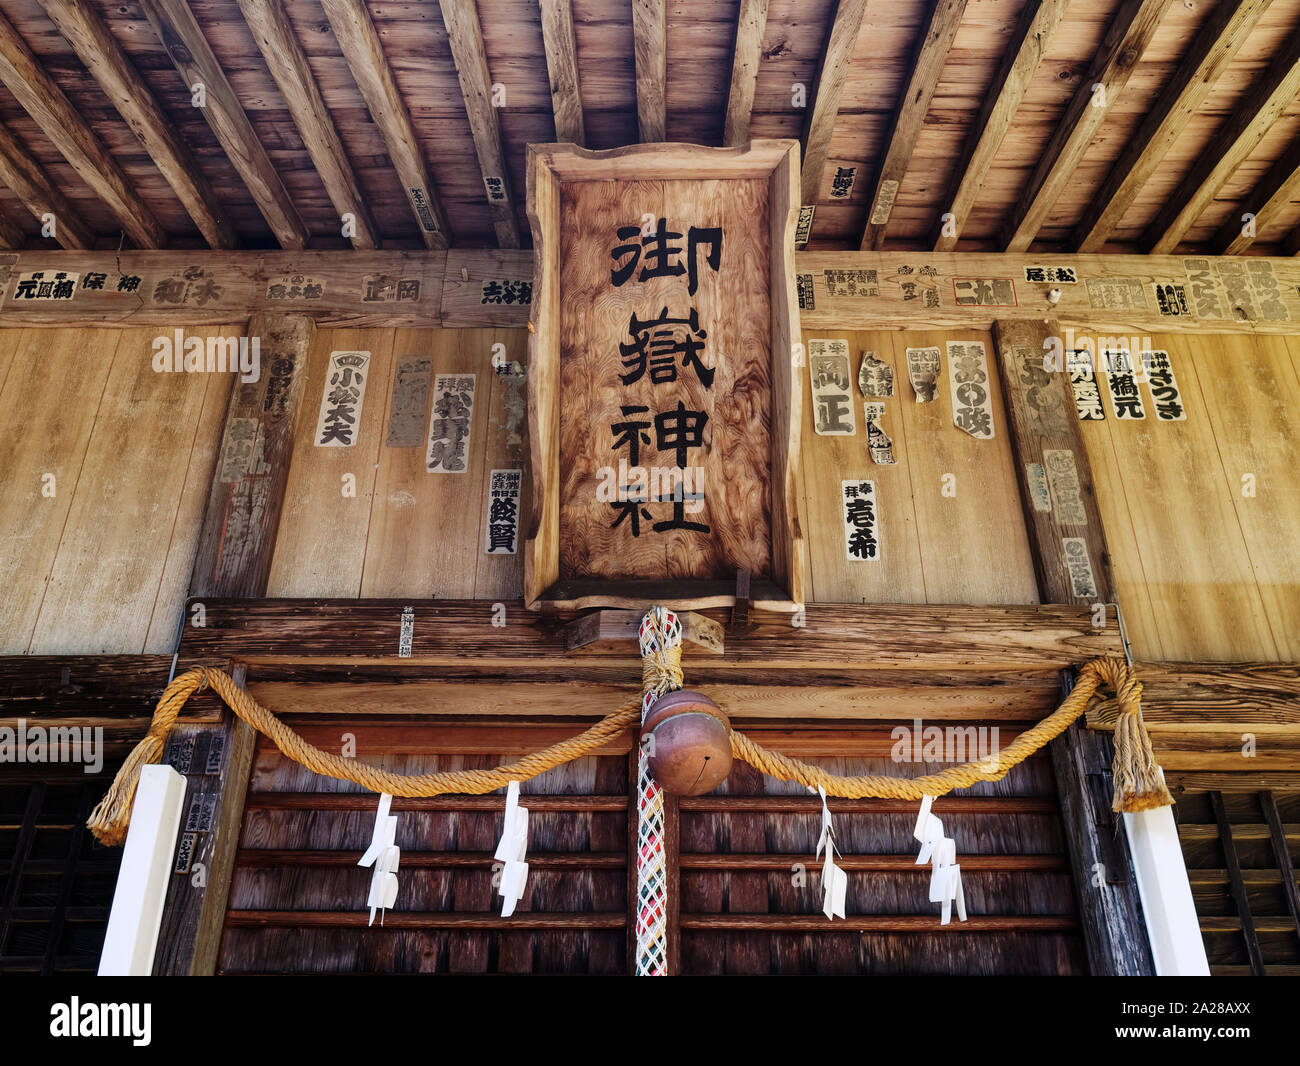 Nahaufnahme der Zeichen an der Shinto Schrein. Die Texte bedeuten: mitake Shinto Schrein. Stockfoto